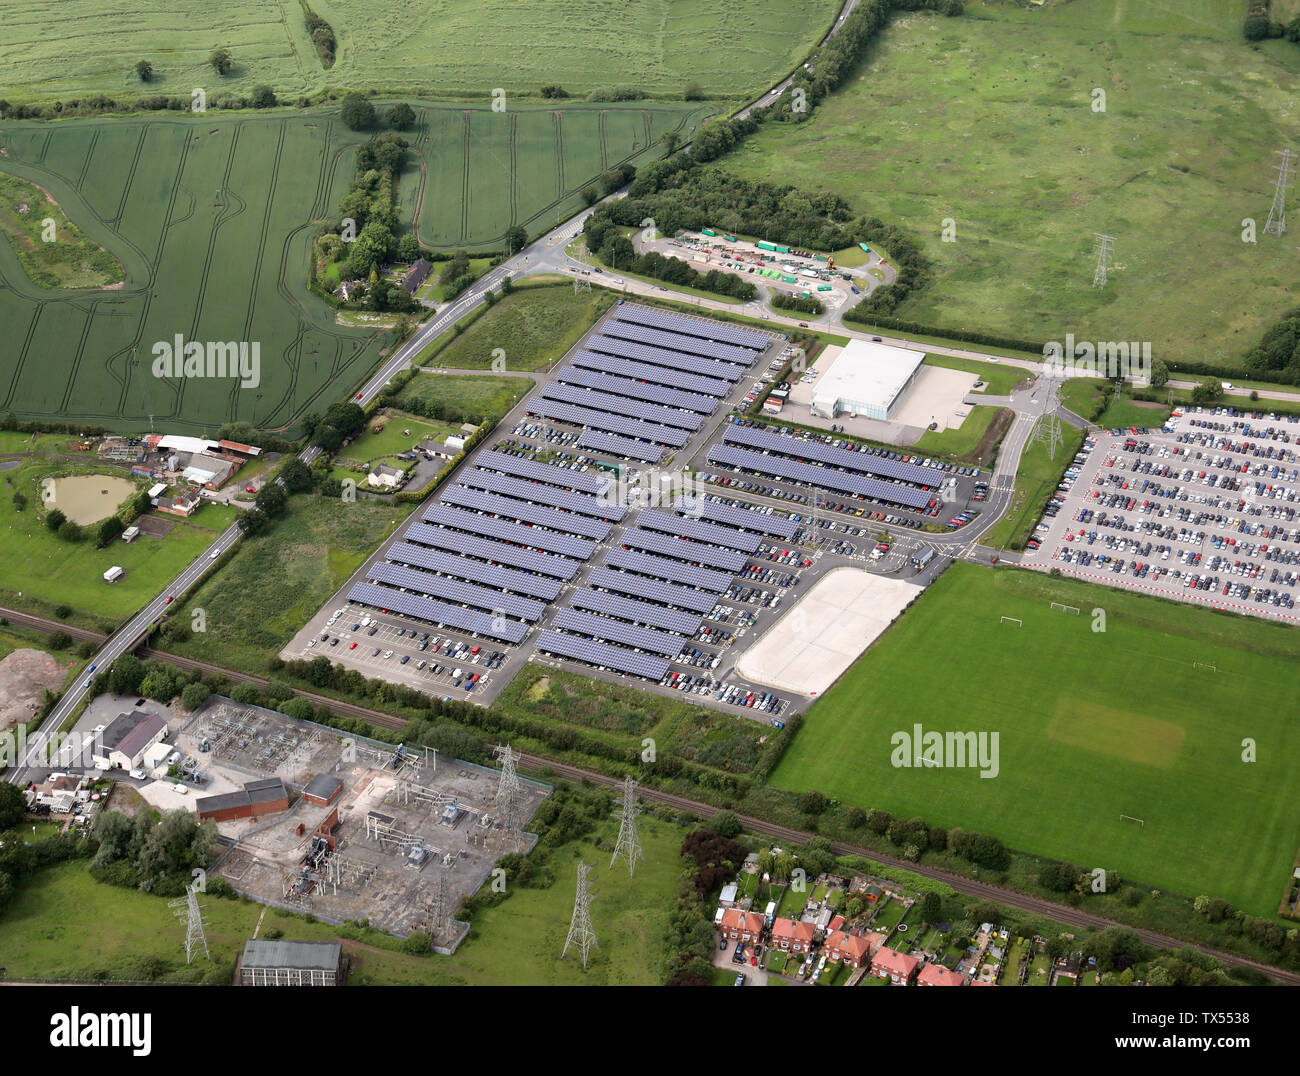 Luftaufnahme von über hundert Solarmodule (PV-Zellen) auf einem Parkplatz an der Bentley auto Fabrikanlage, Crewe, Cheshire Vereinigtes Königreich Stockfoto